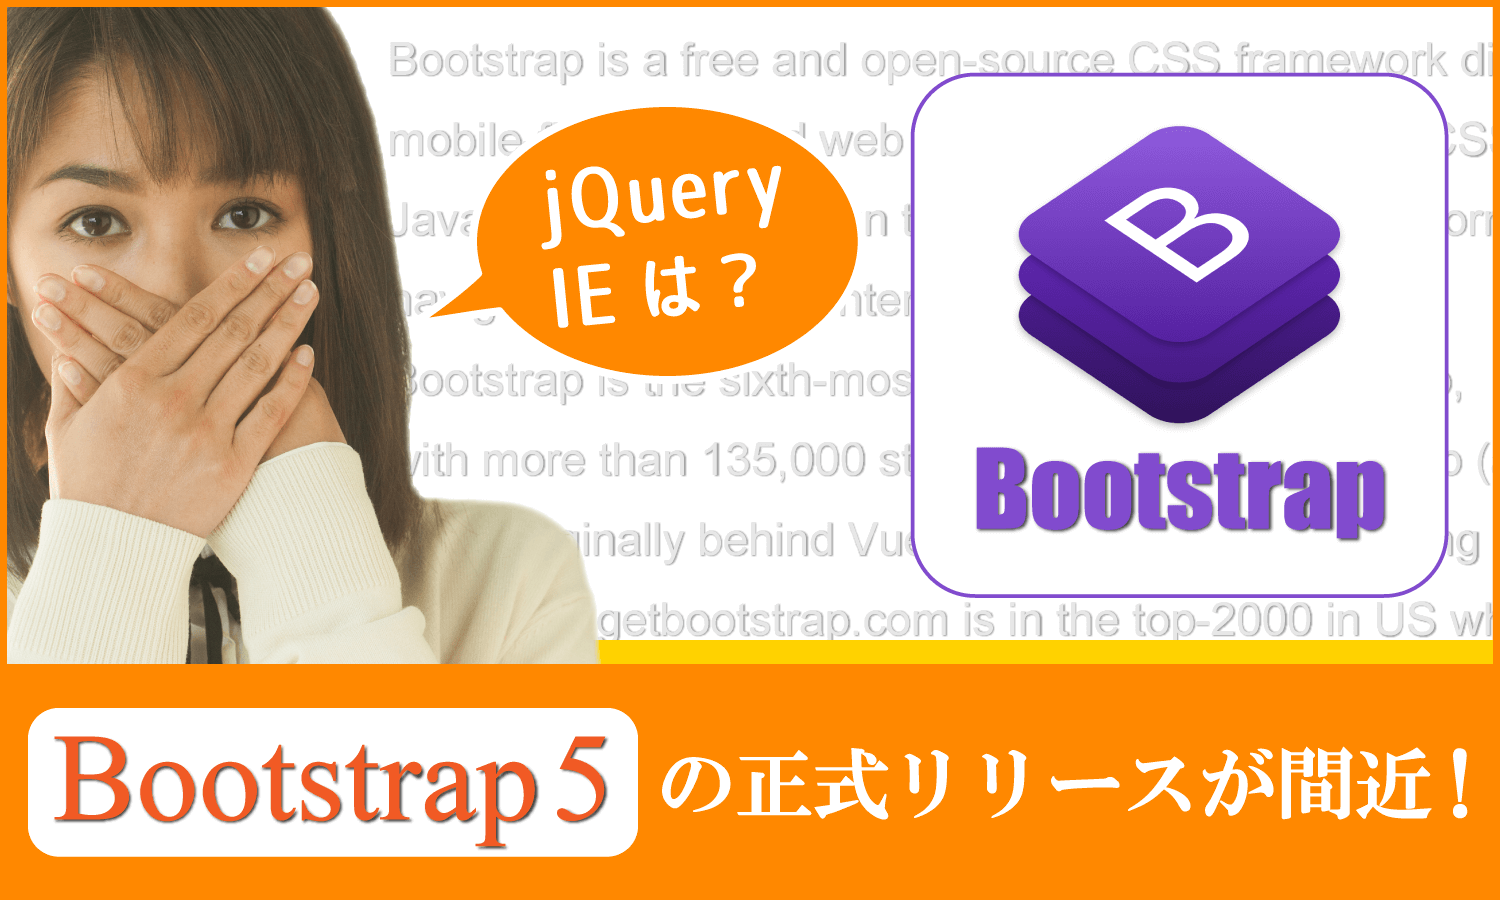 【仕事早っ!!】Bootstrap5の正式リリースが間もなくのようです